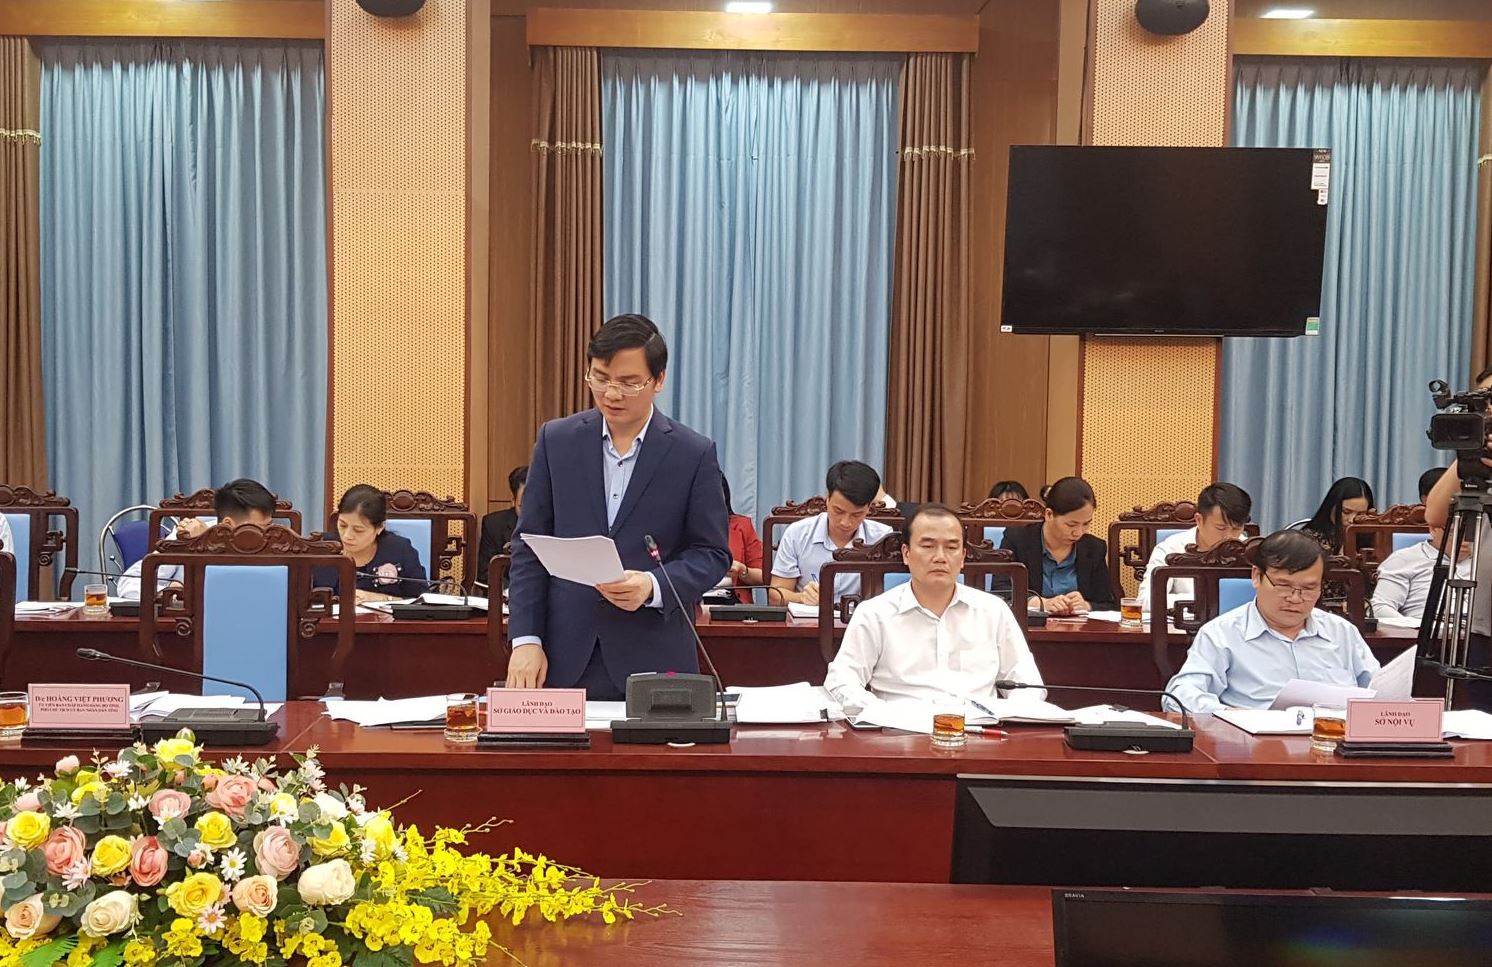 Thứ trưởng Nguyễn Hữu Độ dự giờ, triển khai chương trình phổ thông mới ở Tuyên Quang - Ảnh minh hoạ 4